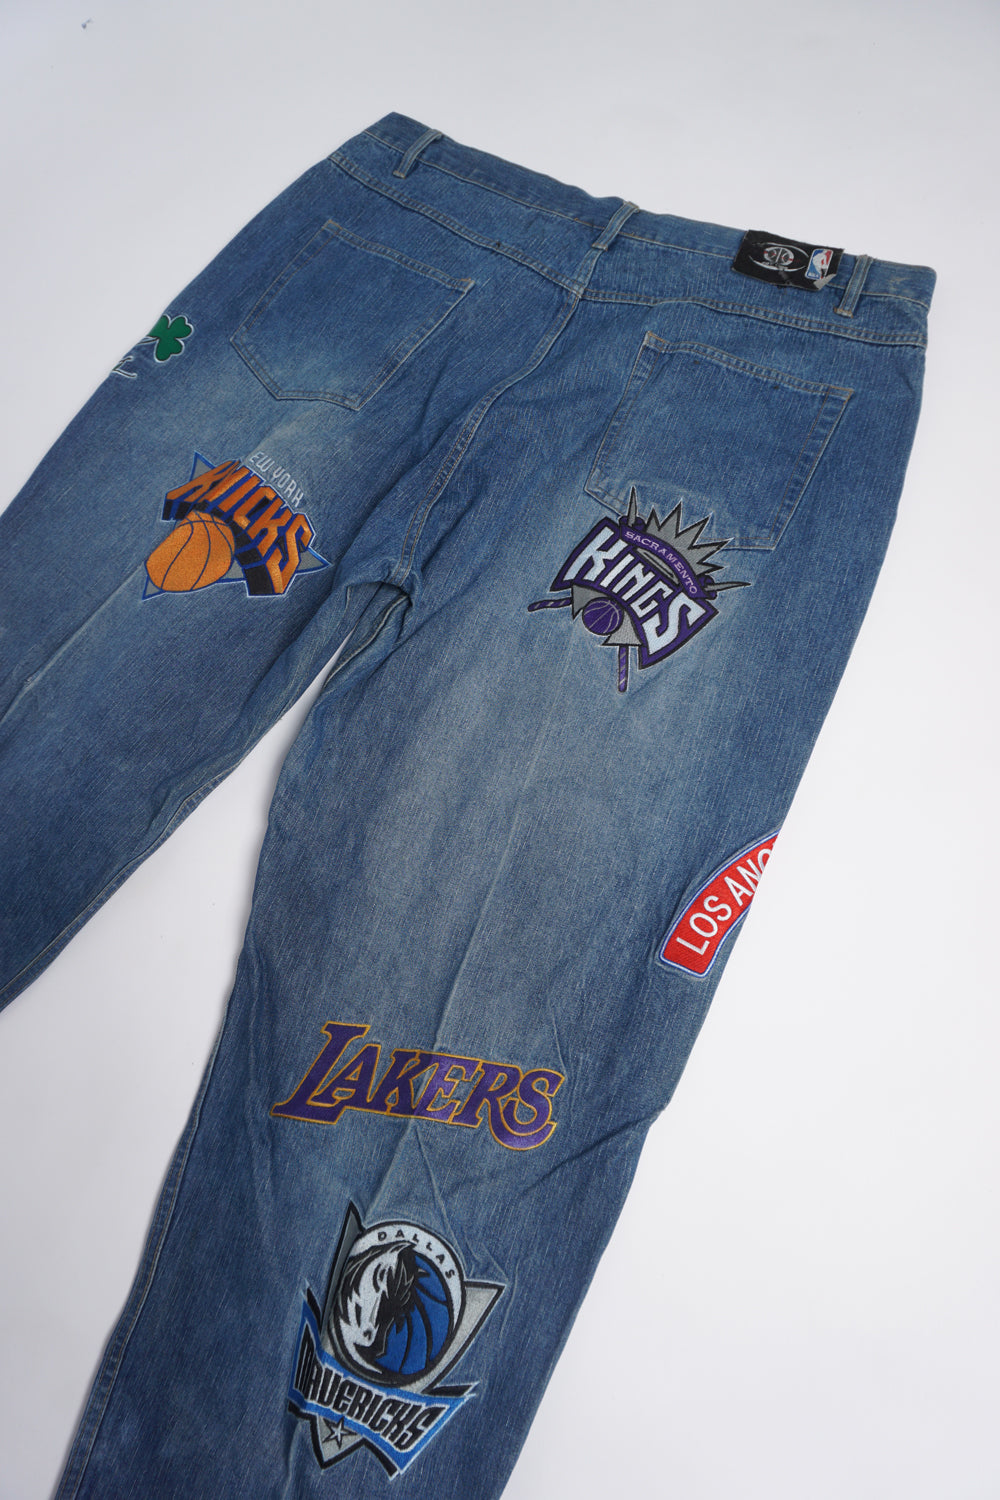 Unk, Jeans, Vintage Nba Unk Denim Patches Denim Jeans Pants Basketball  Mens 34 Lakers Bulls